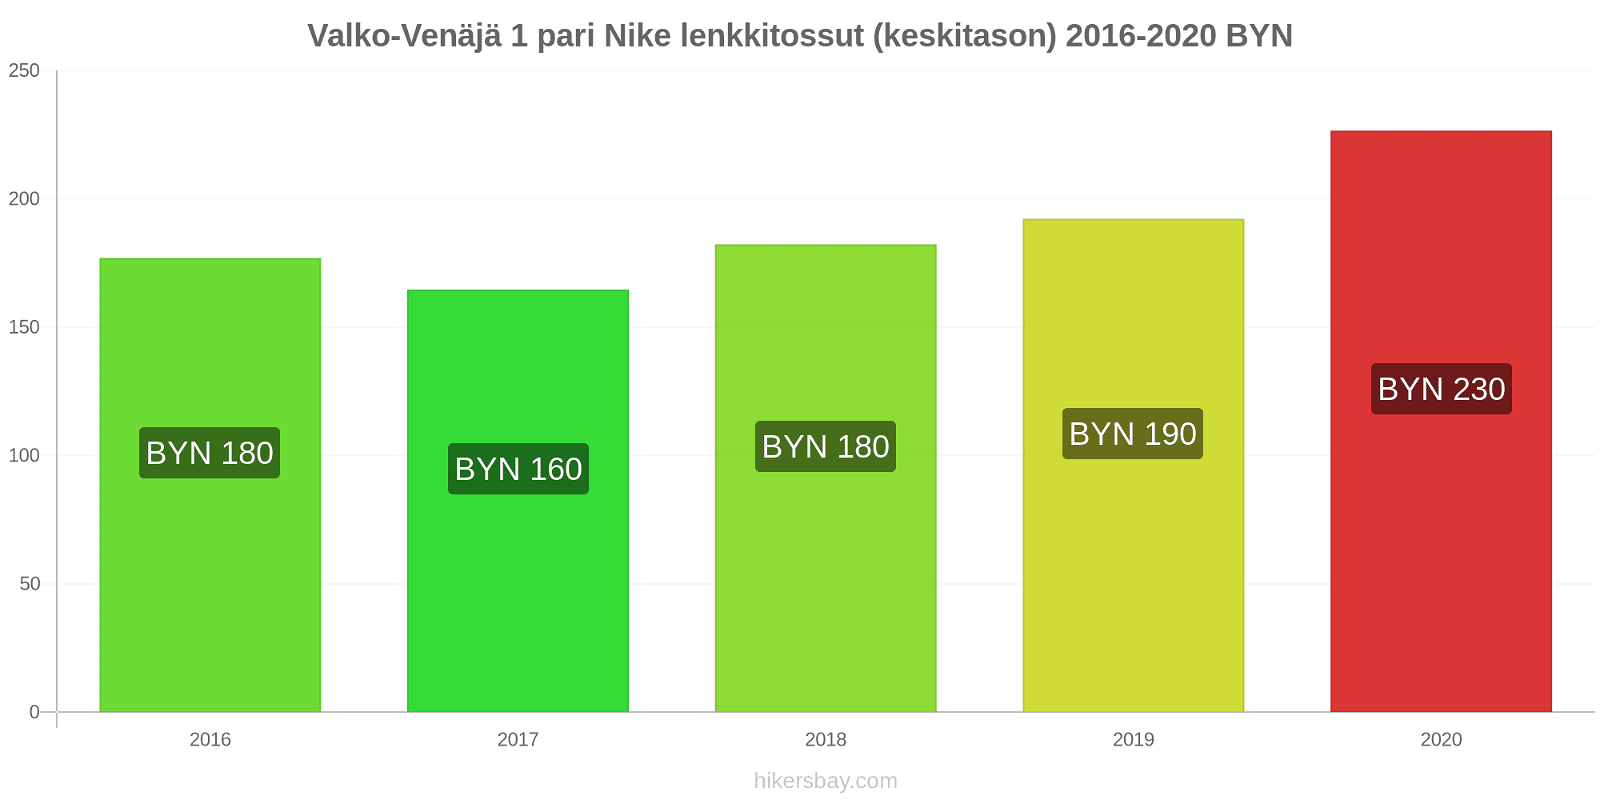 Valko-Venäjä hintojen muutokset 1 pari Nike lenkkitossut (keskitason) hikersbay.com